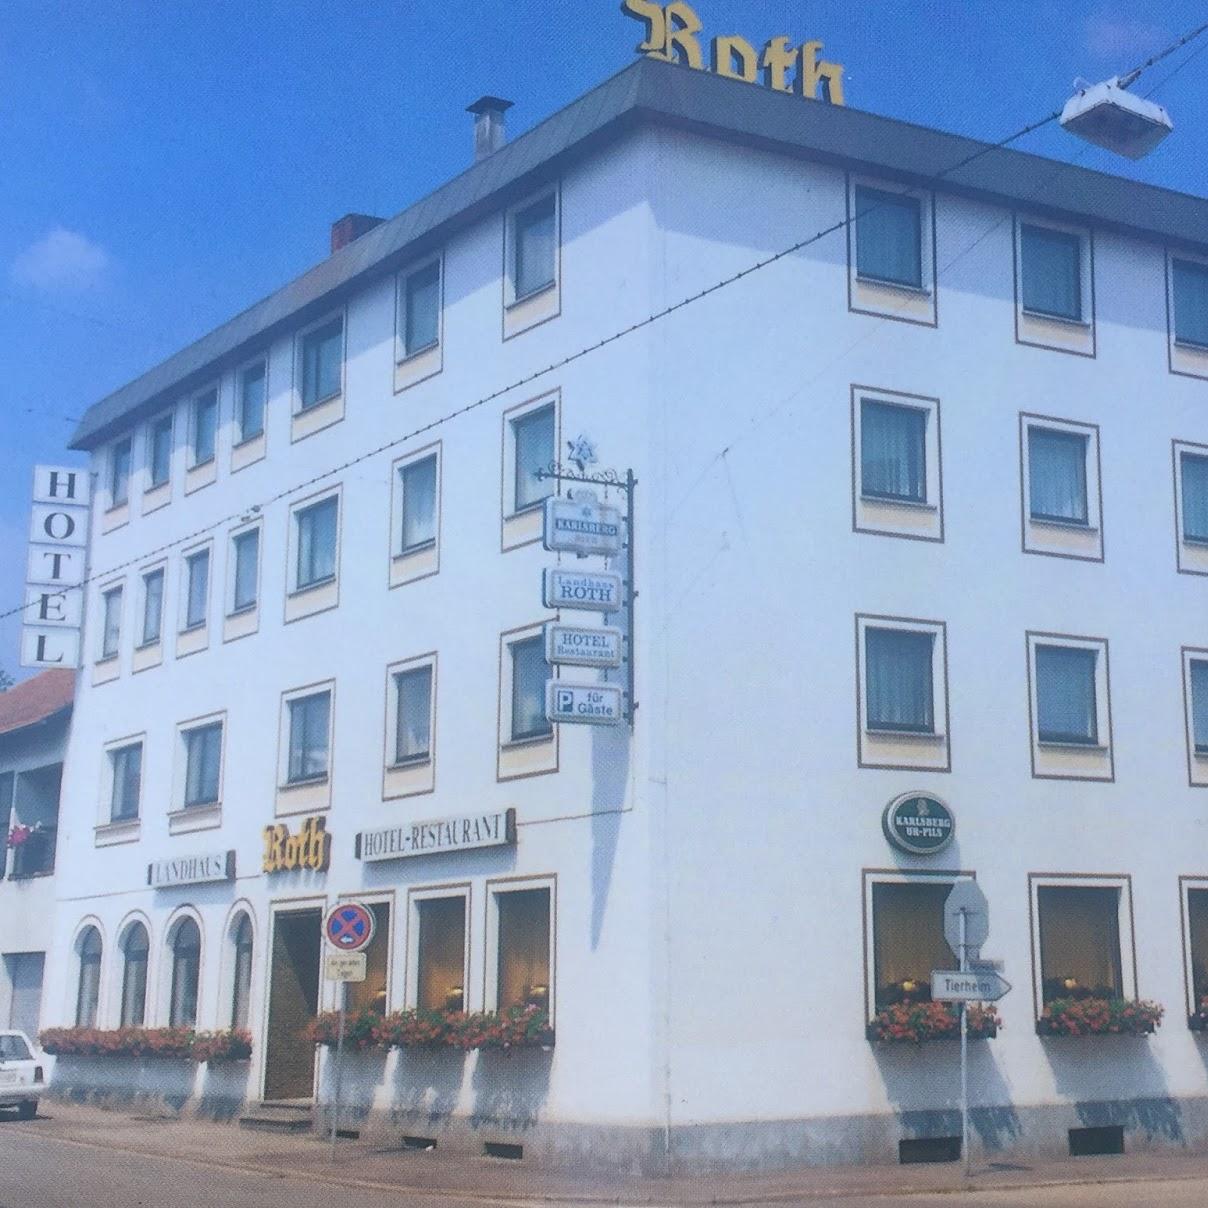 Restaurant "Hotel Landhaus Roth" in Homburg